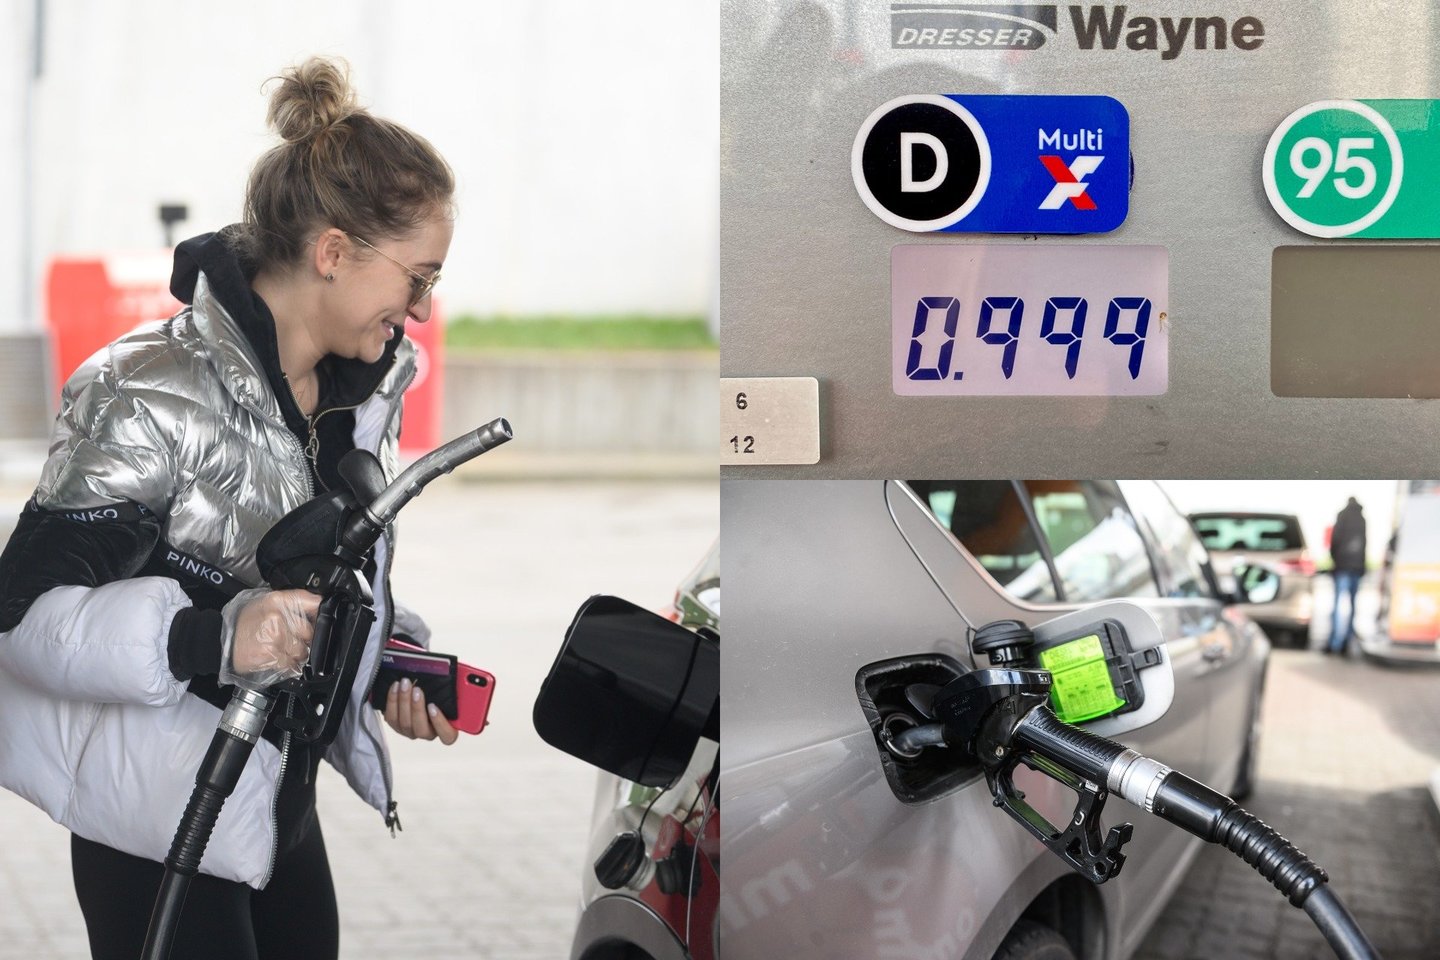 Šalies vairuotojai Lietuvoje jau gali įsipilti degalų pigiau nei už eurą – Klaipėdoje vienoje iš degalinių litras dyzelino kainuoja 0,99 eurų.<br>Lrytas.lt fotomontažas.